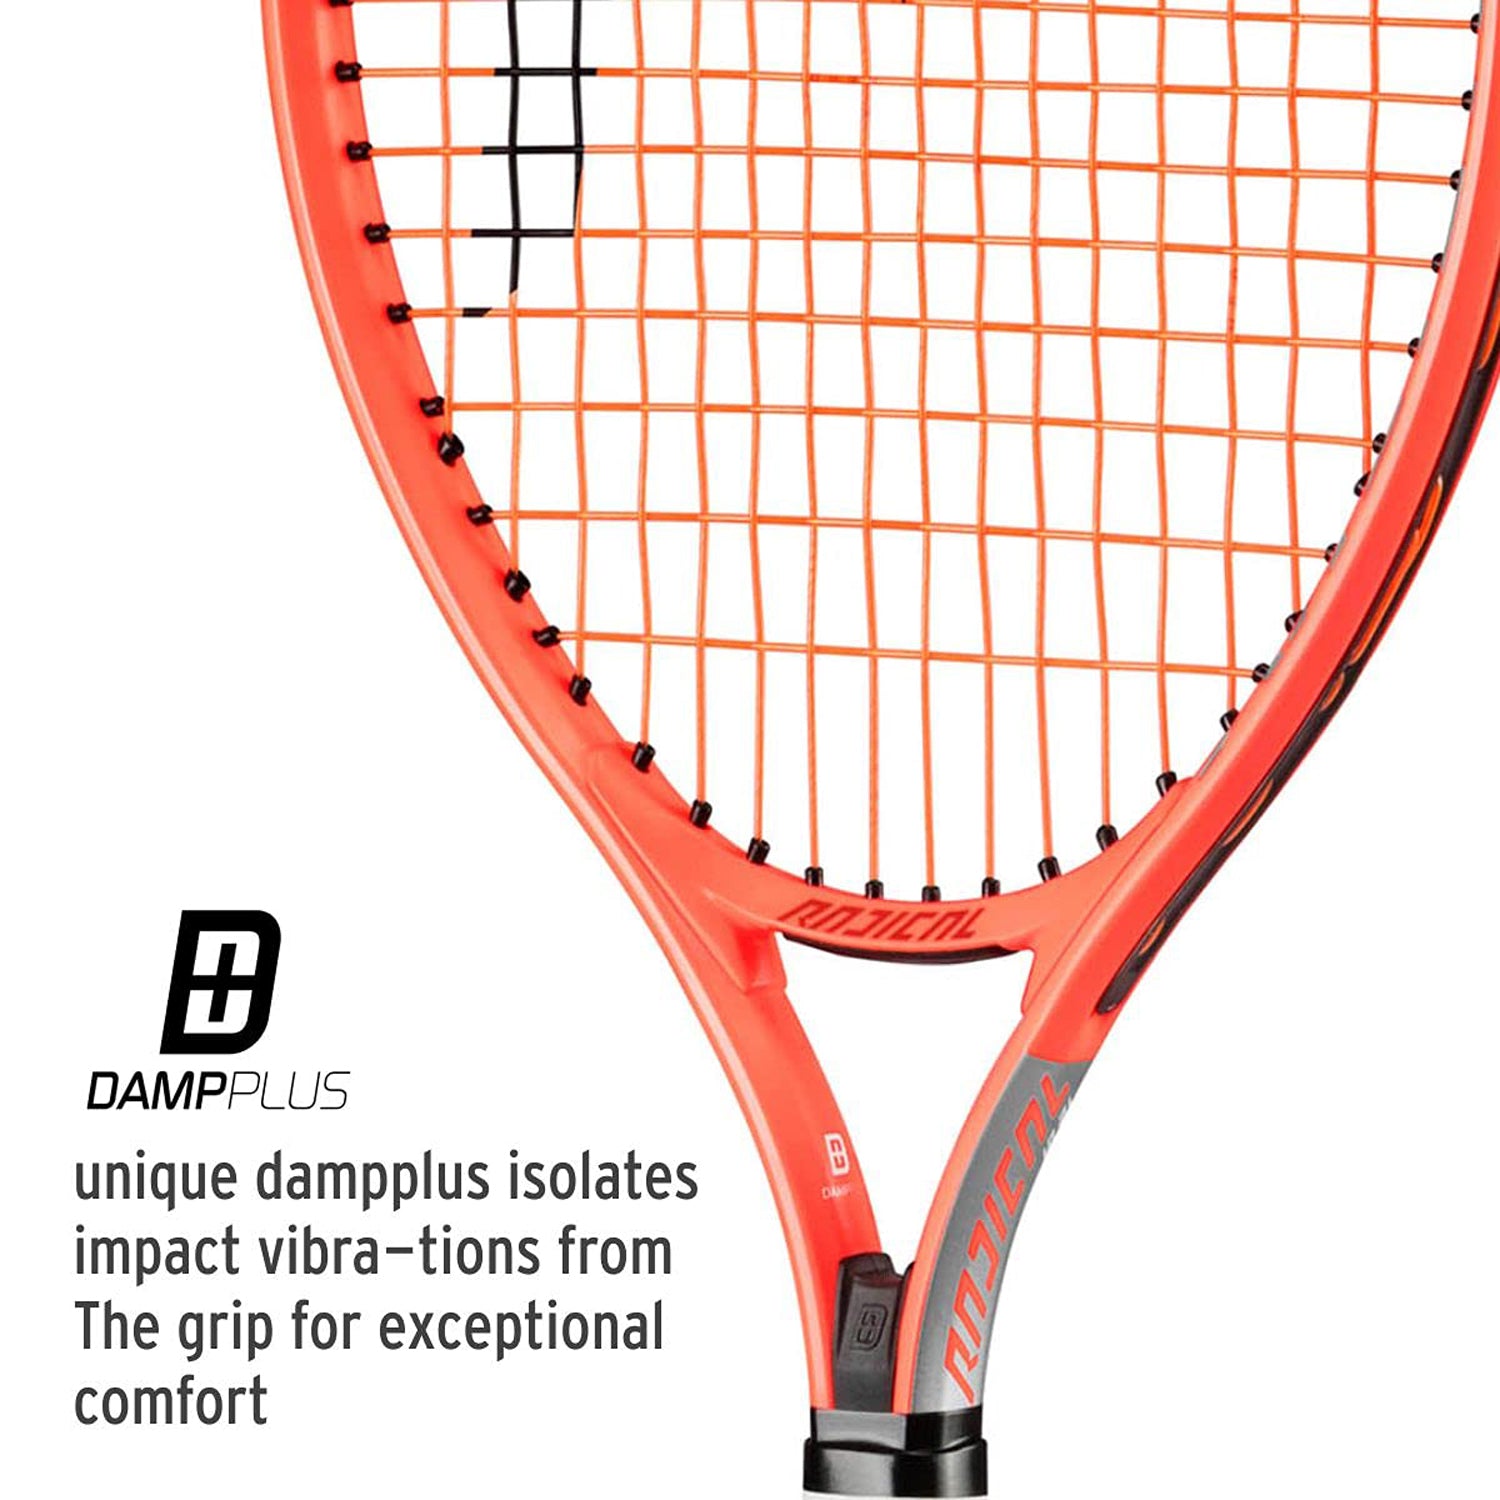 HEAD Radical 25 2021 Strung Tennis Racquet for Juniors - Best Price online Prokicksports.com